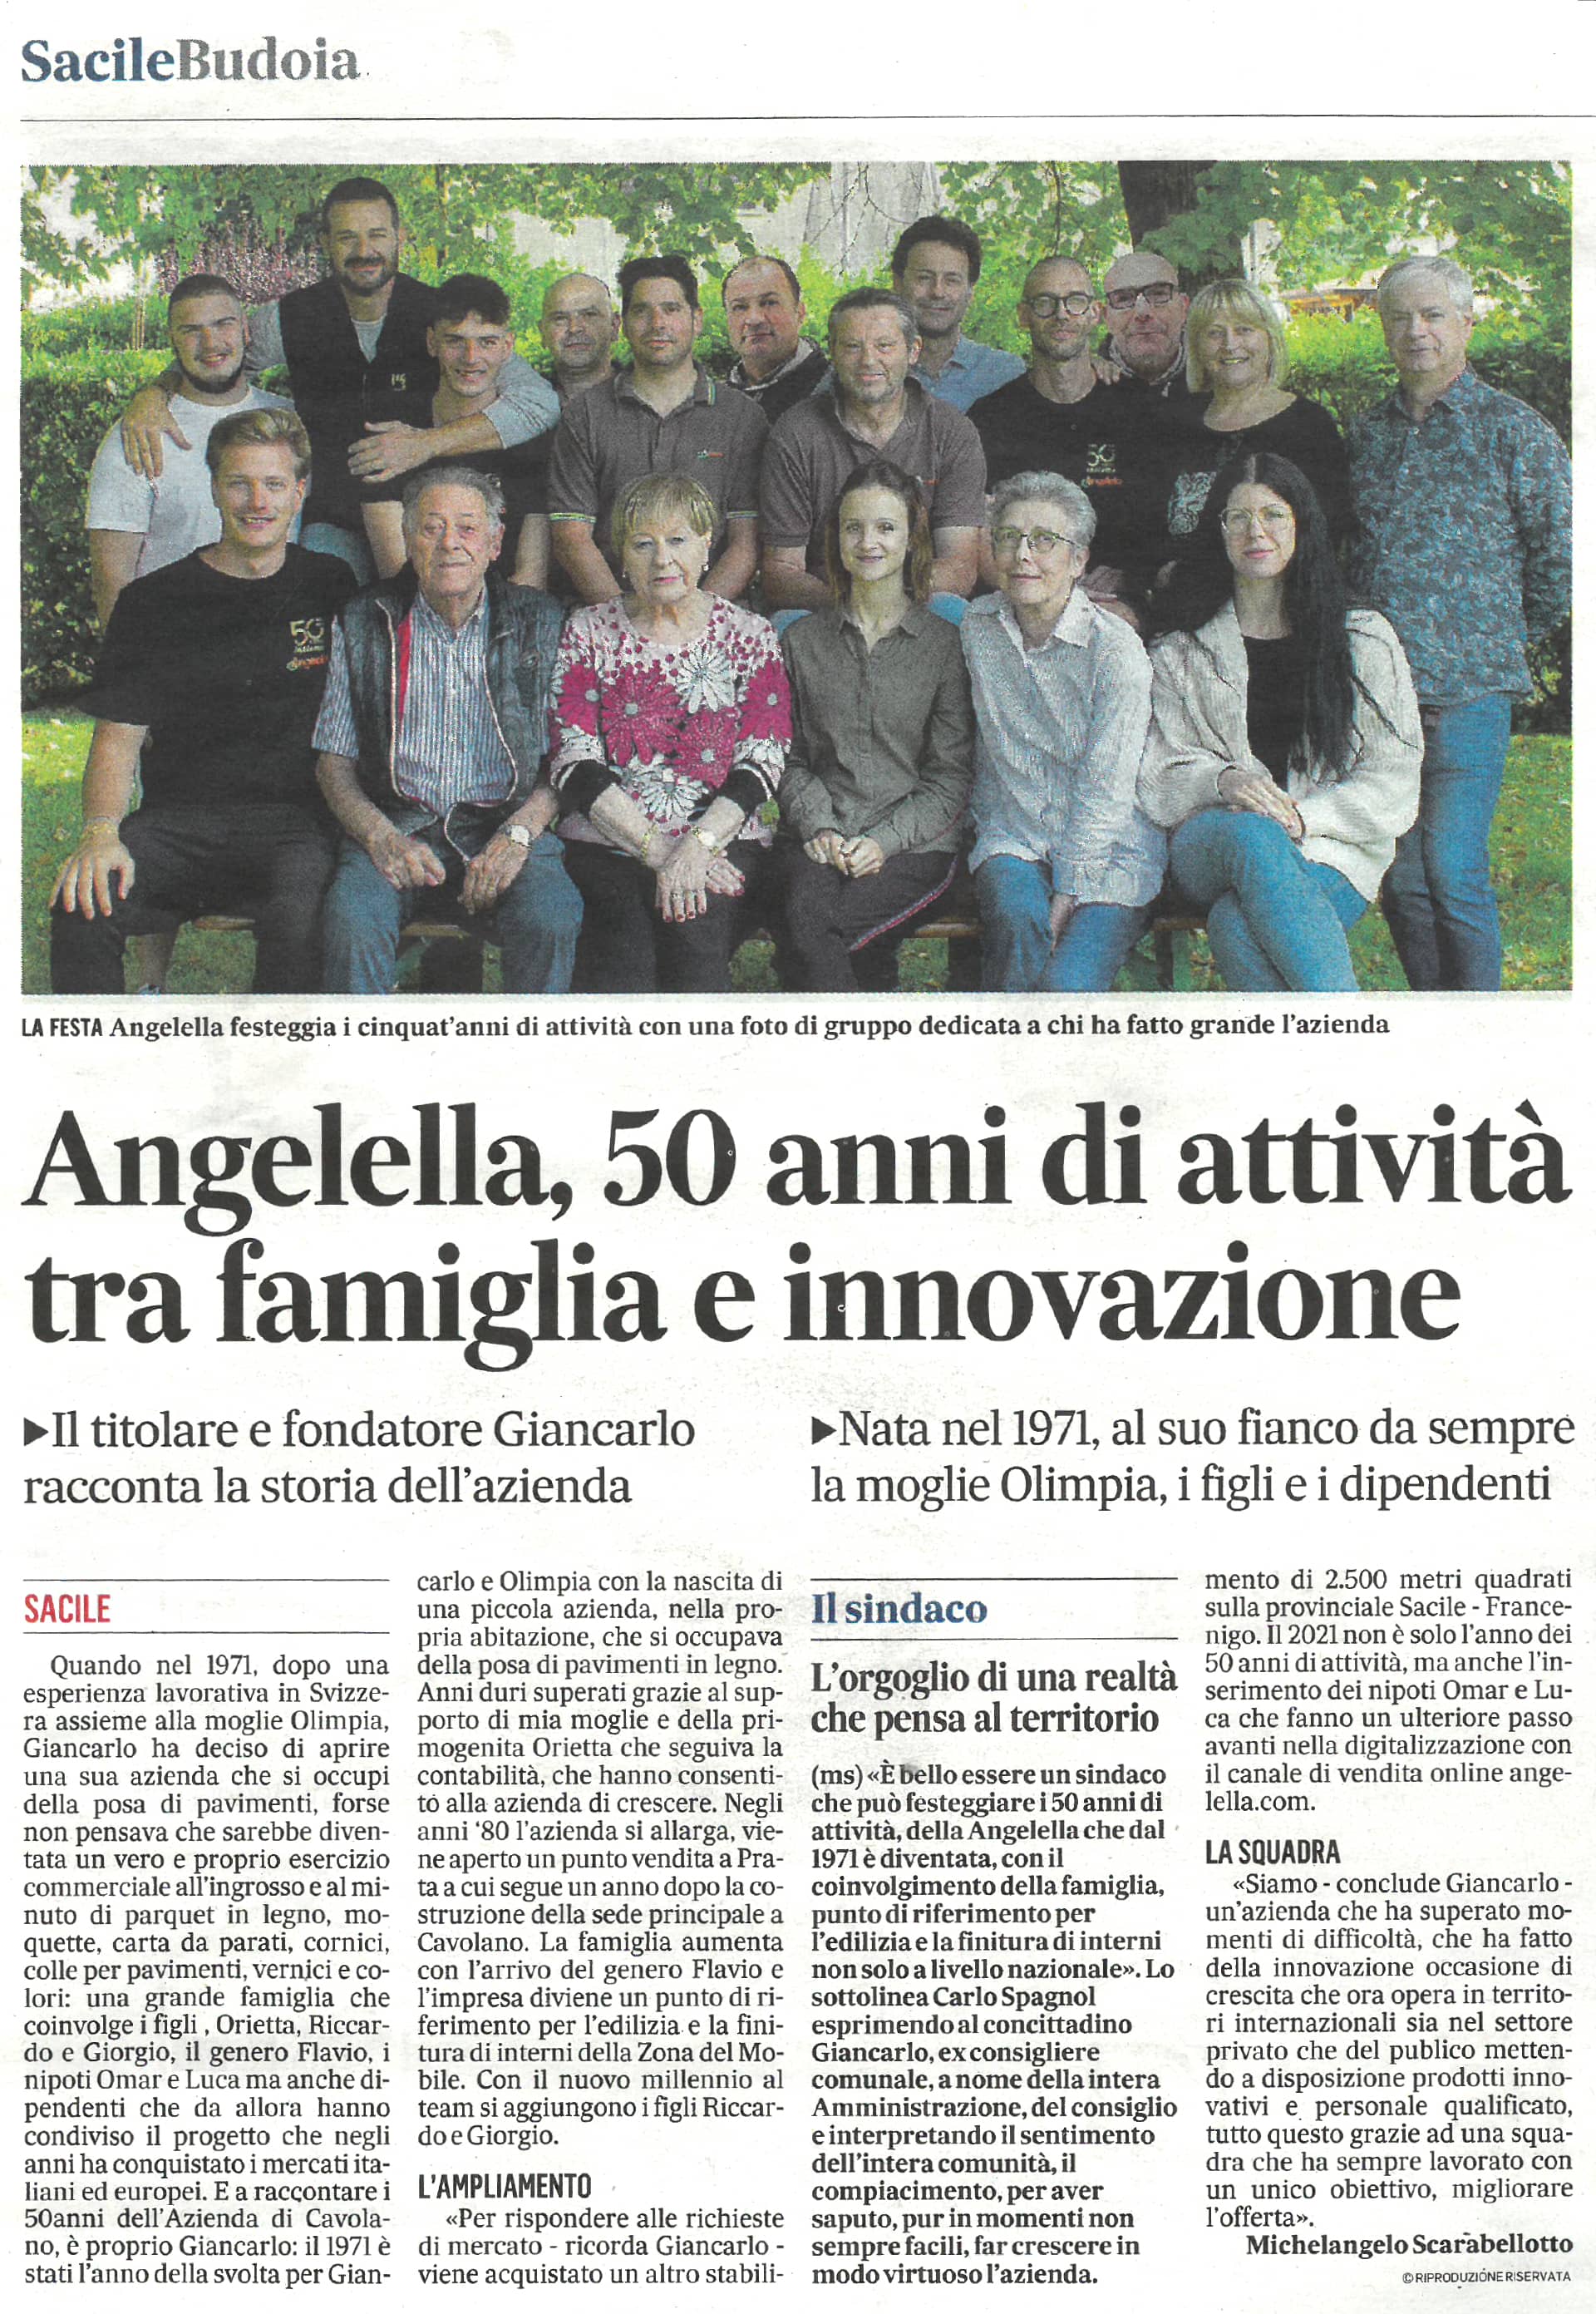 Il Gazzettino - Angelella, 50 anni di attività tra famiglia e innovazione